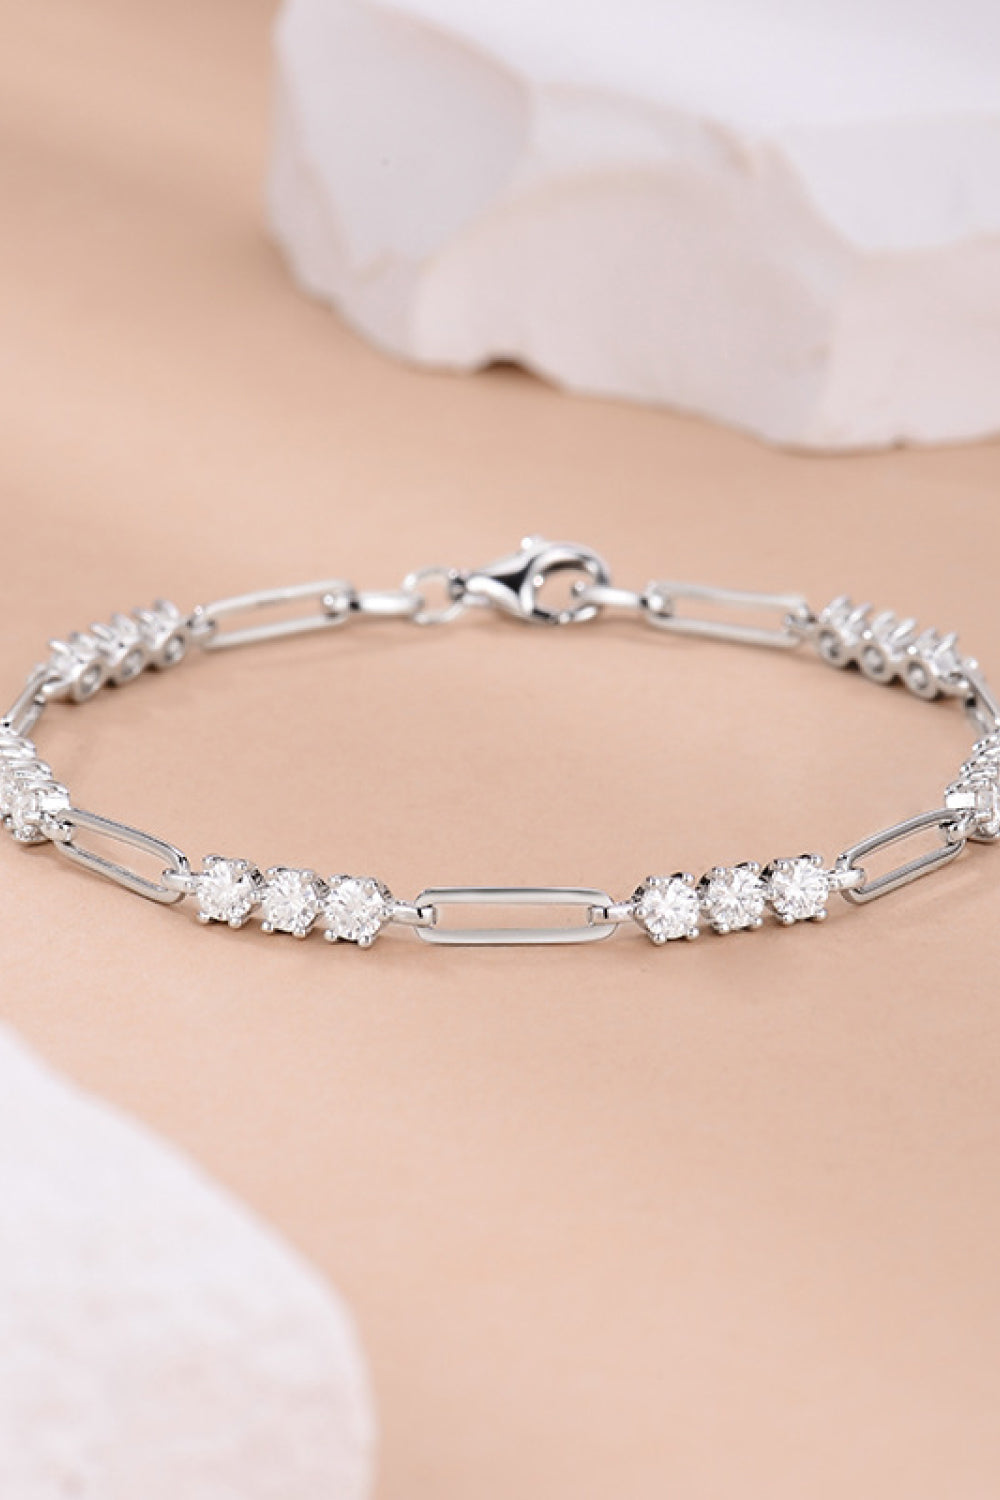 1.8 Carat Moissanite 925 Sterling Silver Bracelet - Women’s Jewelry - Bracelets - 2 - 2024